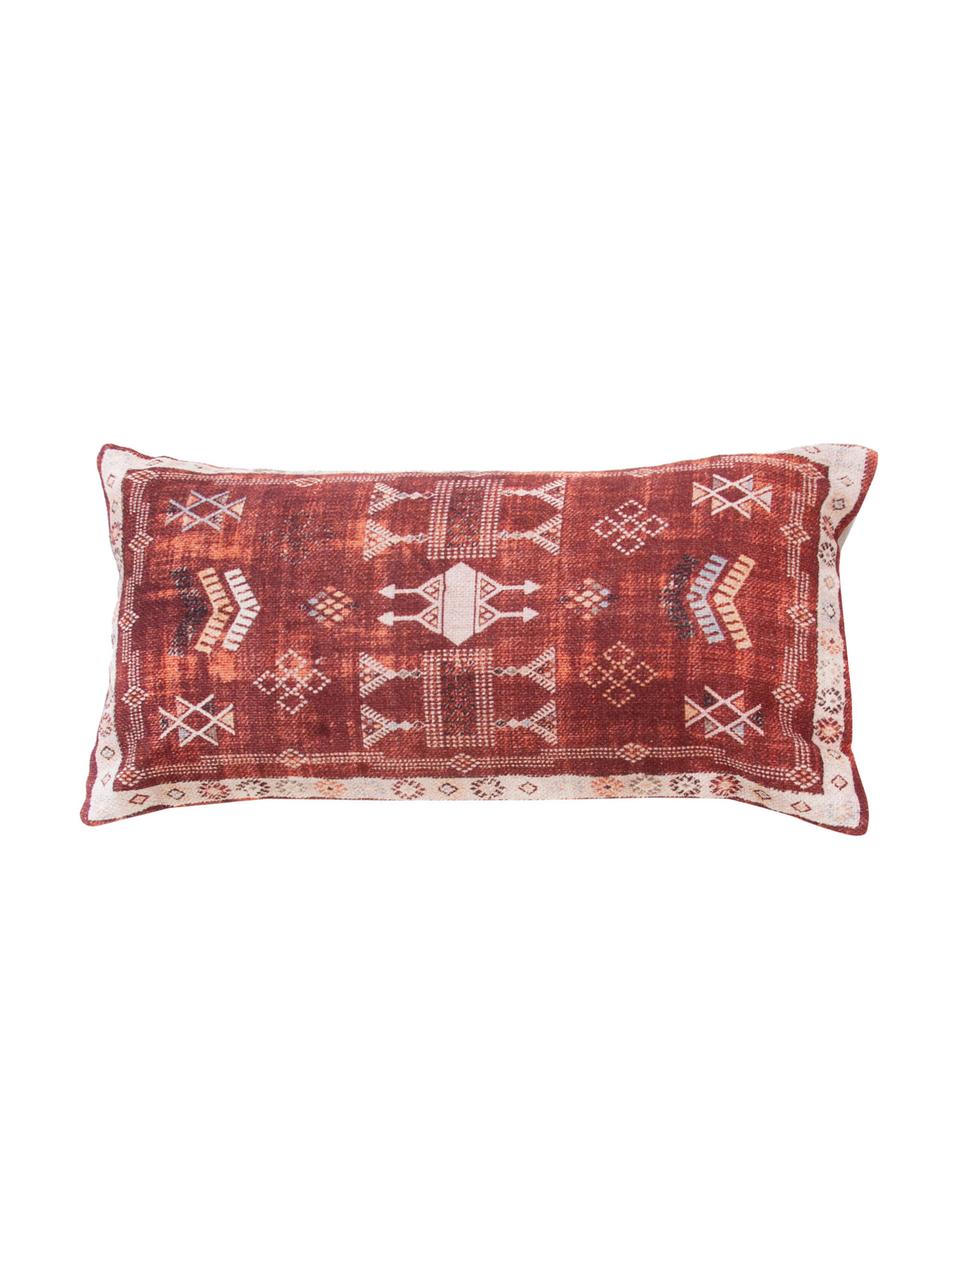 Boho-Kissenhülle Tanger in Rot/Weiß, 100% Baumwolle, Rot, Beige, 30 x 60 cm